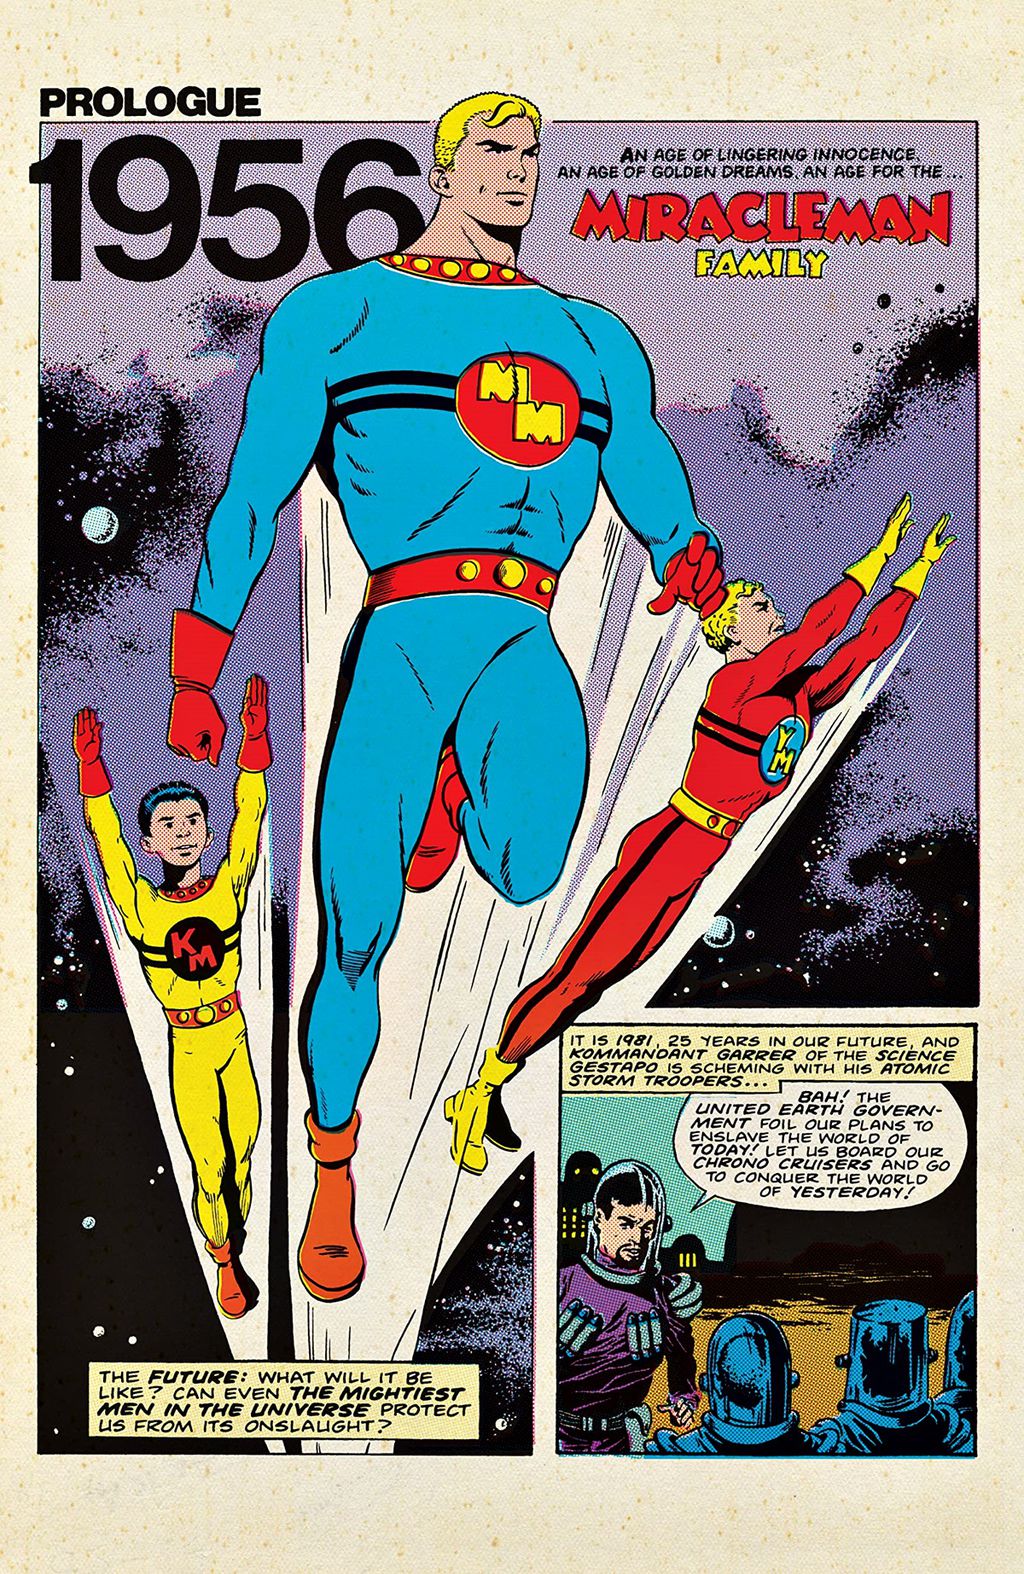 Edições de Miracleman nos anos 1950 eram quase uma cópia do Capitão Marvel da Fawcett Comics (Imagem: Reprodução/Eclipse Comics)